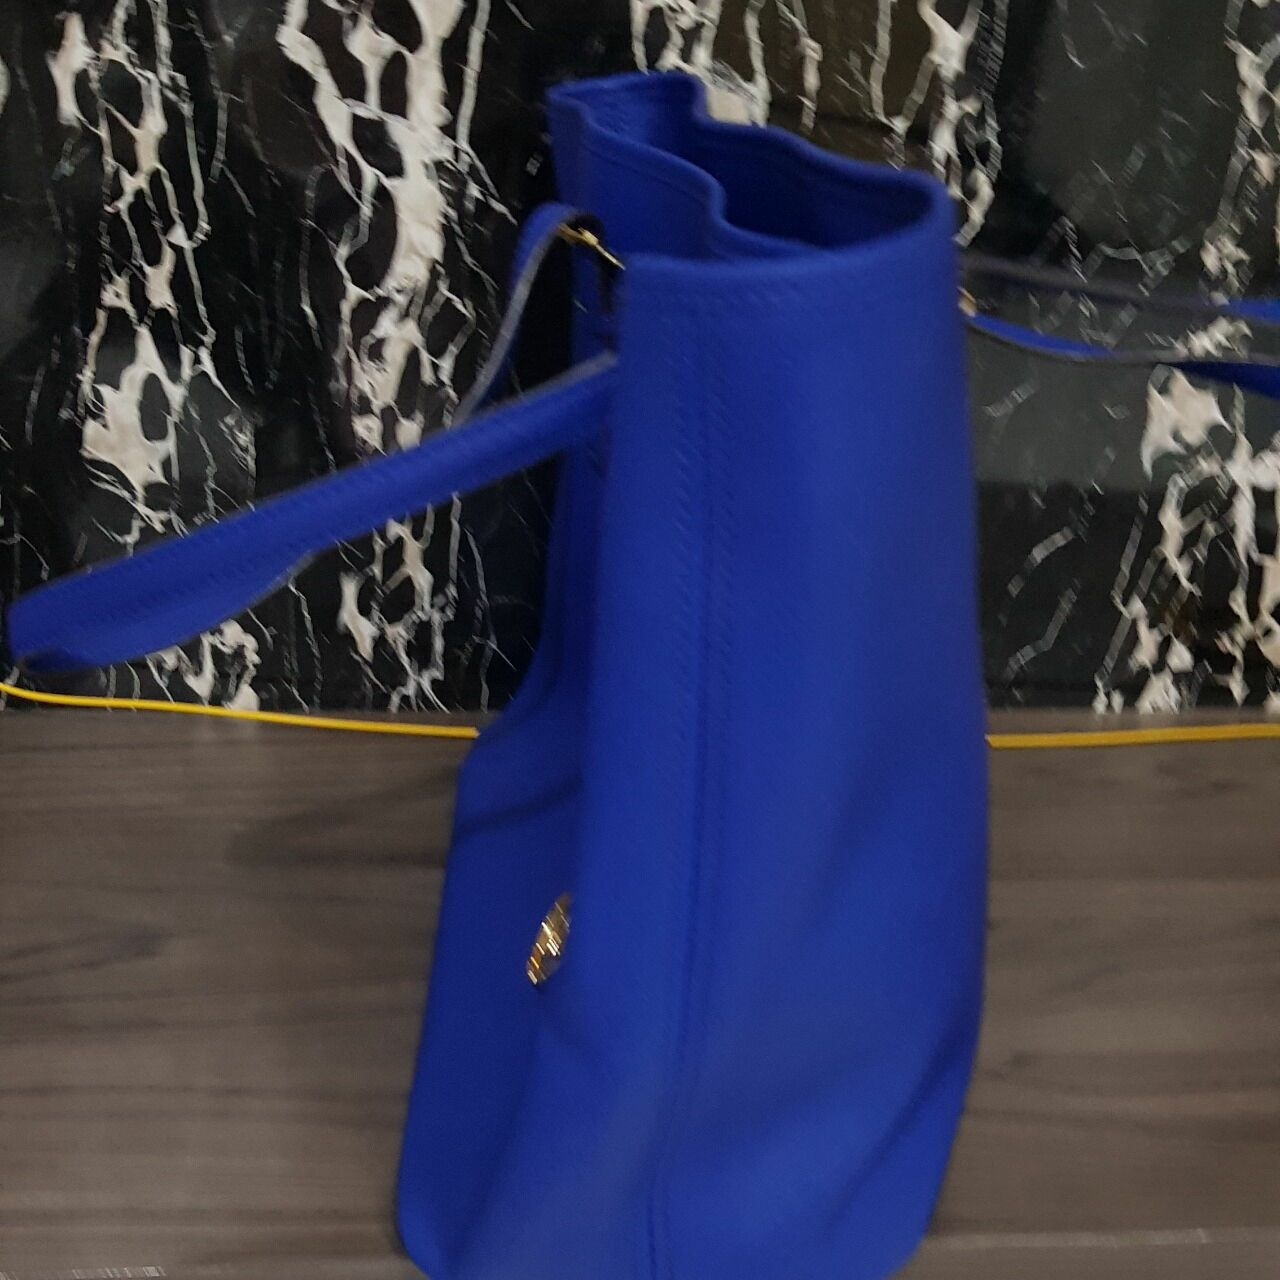 Michael Kors Blue Organic Tote Bag